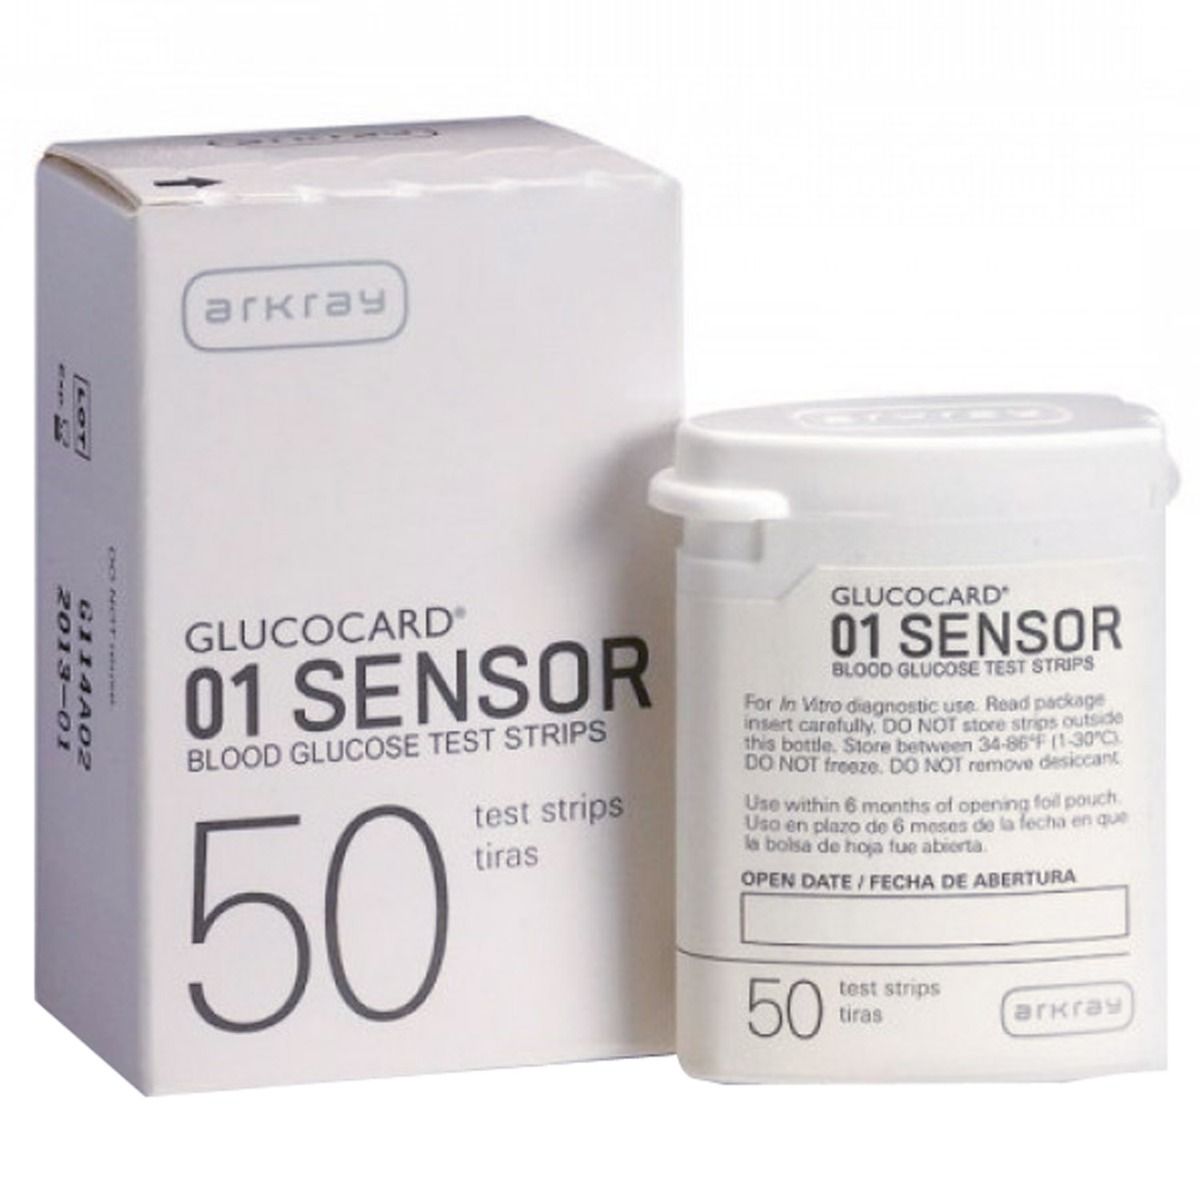 Buy Glucocard 01 Sensor 50's Online